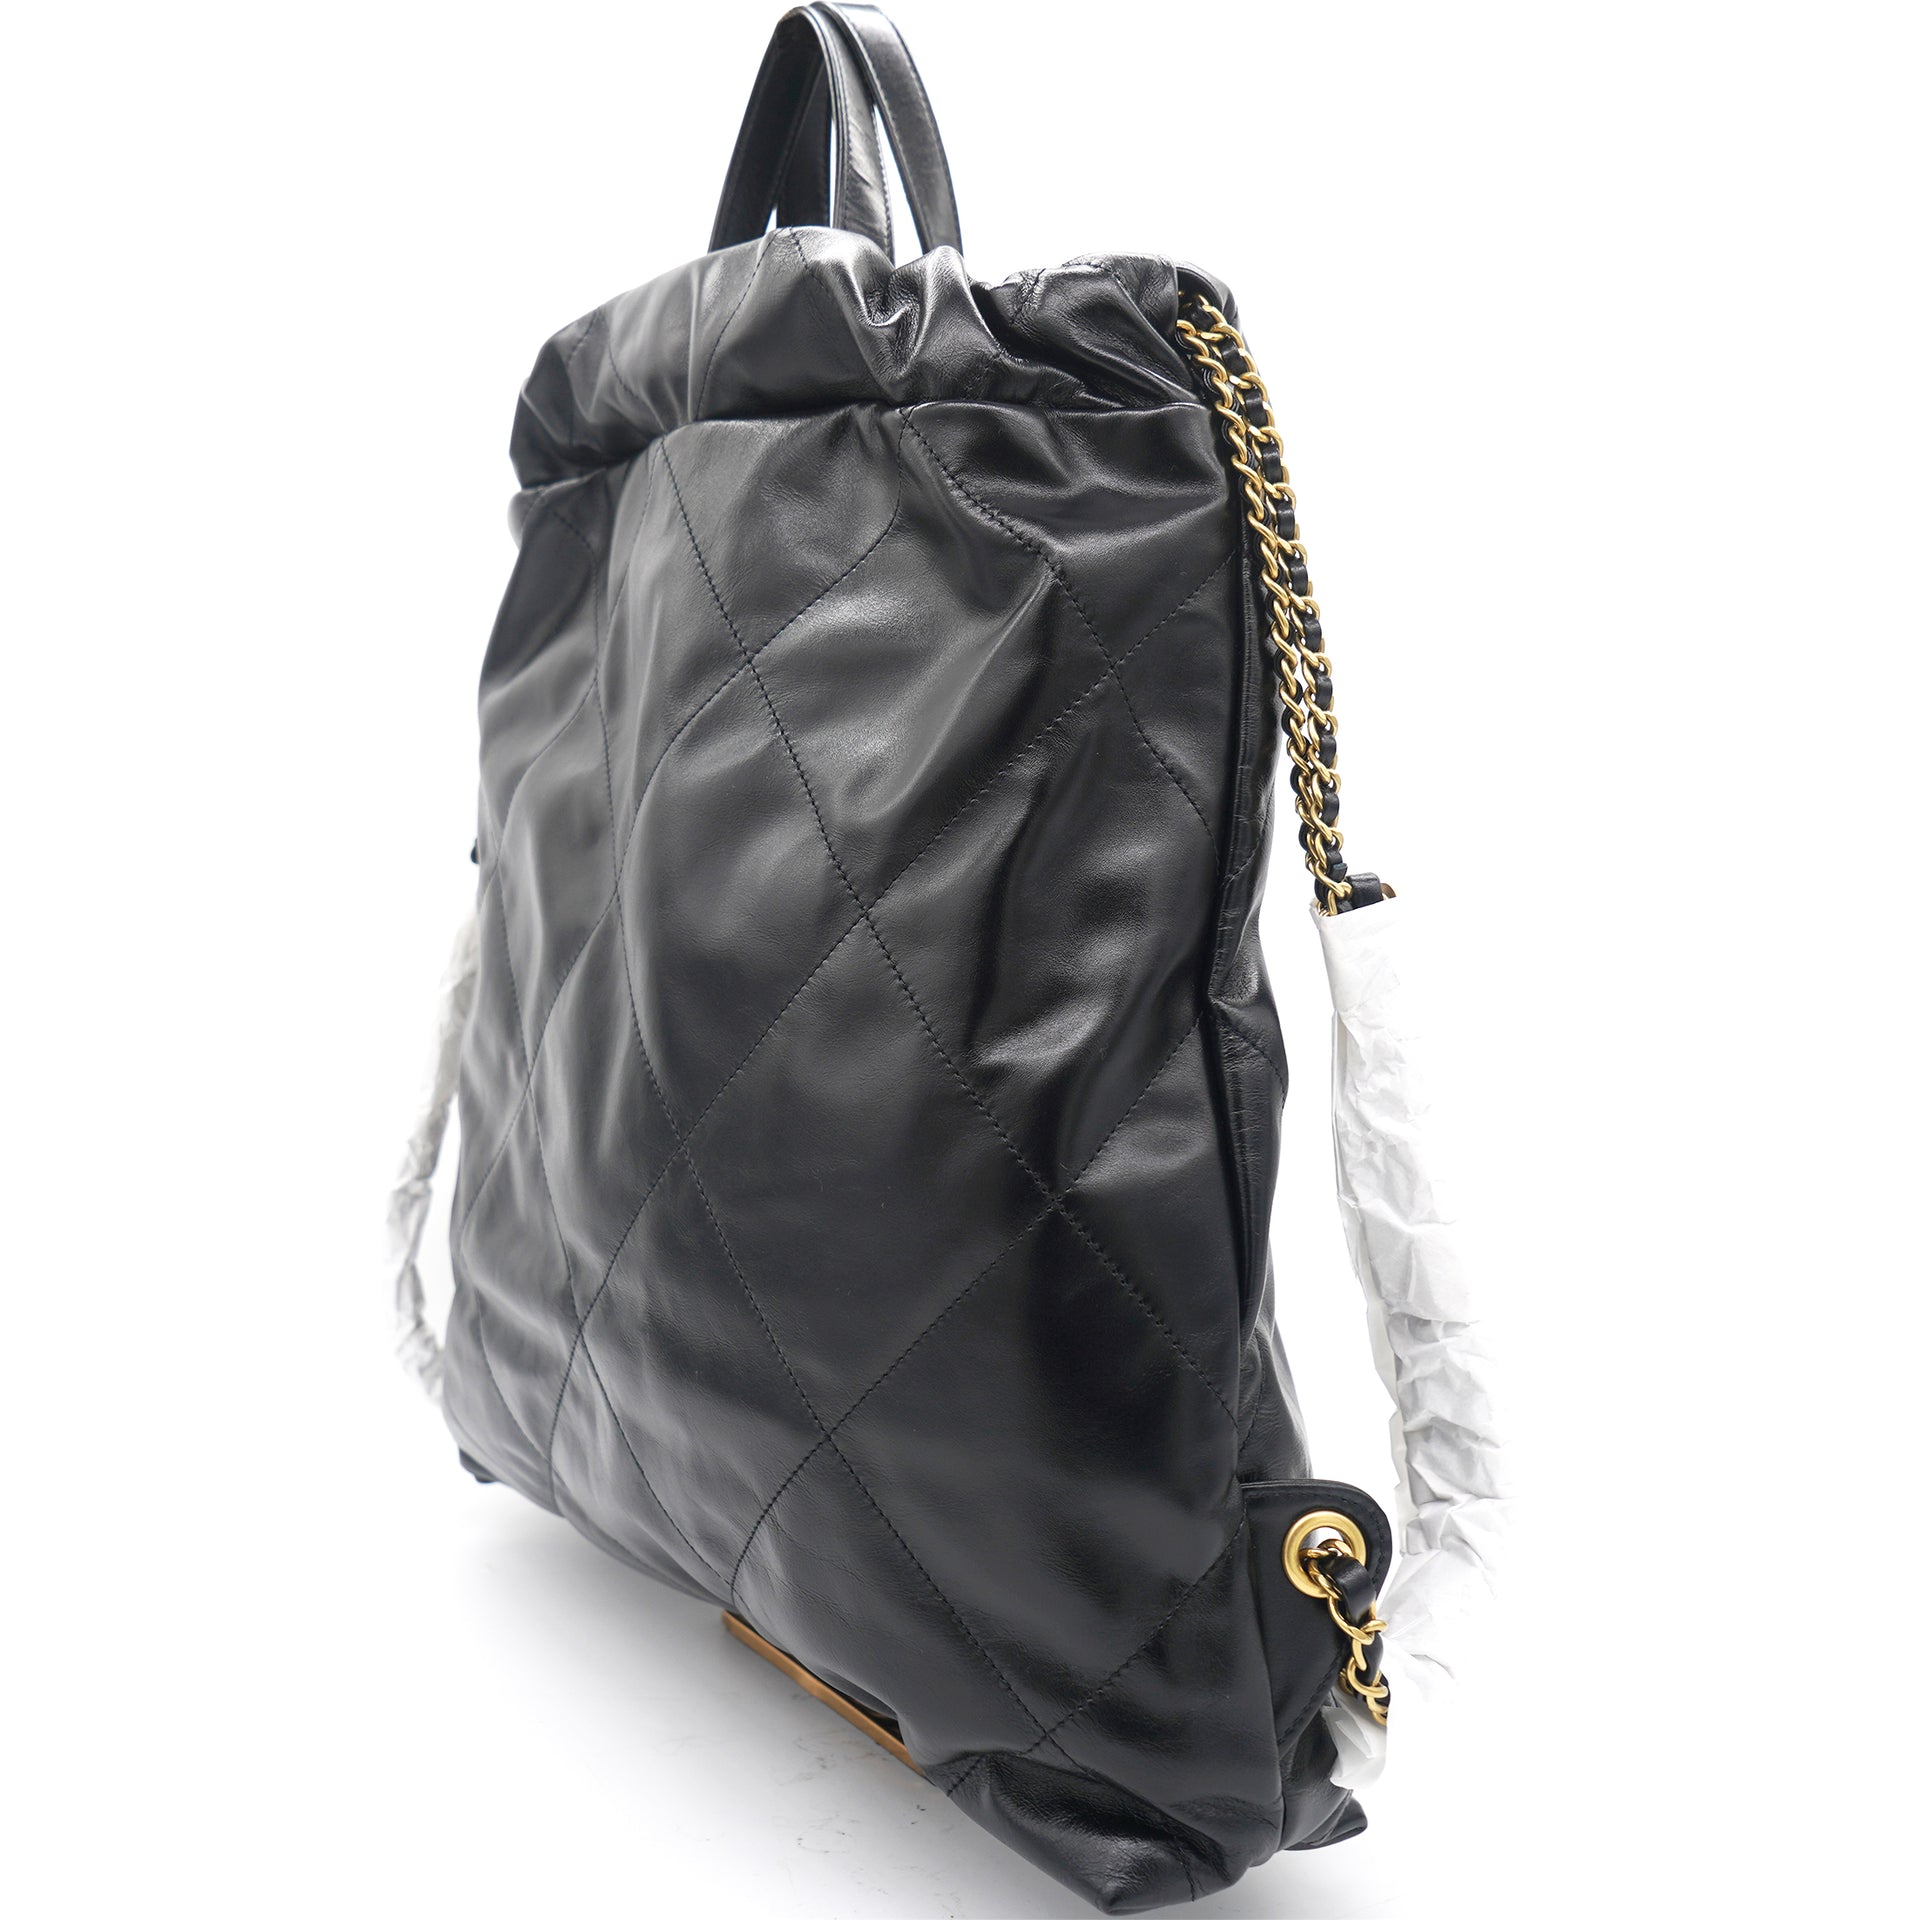 22 large backpack Black